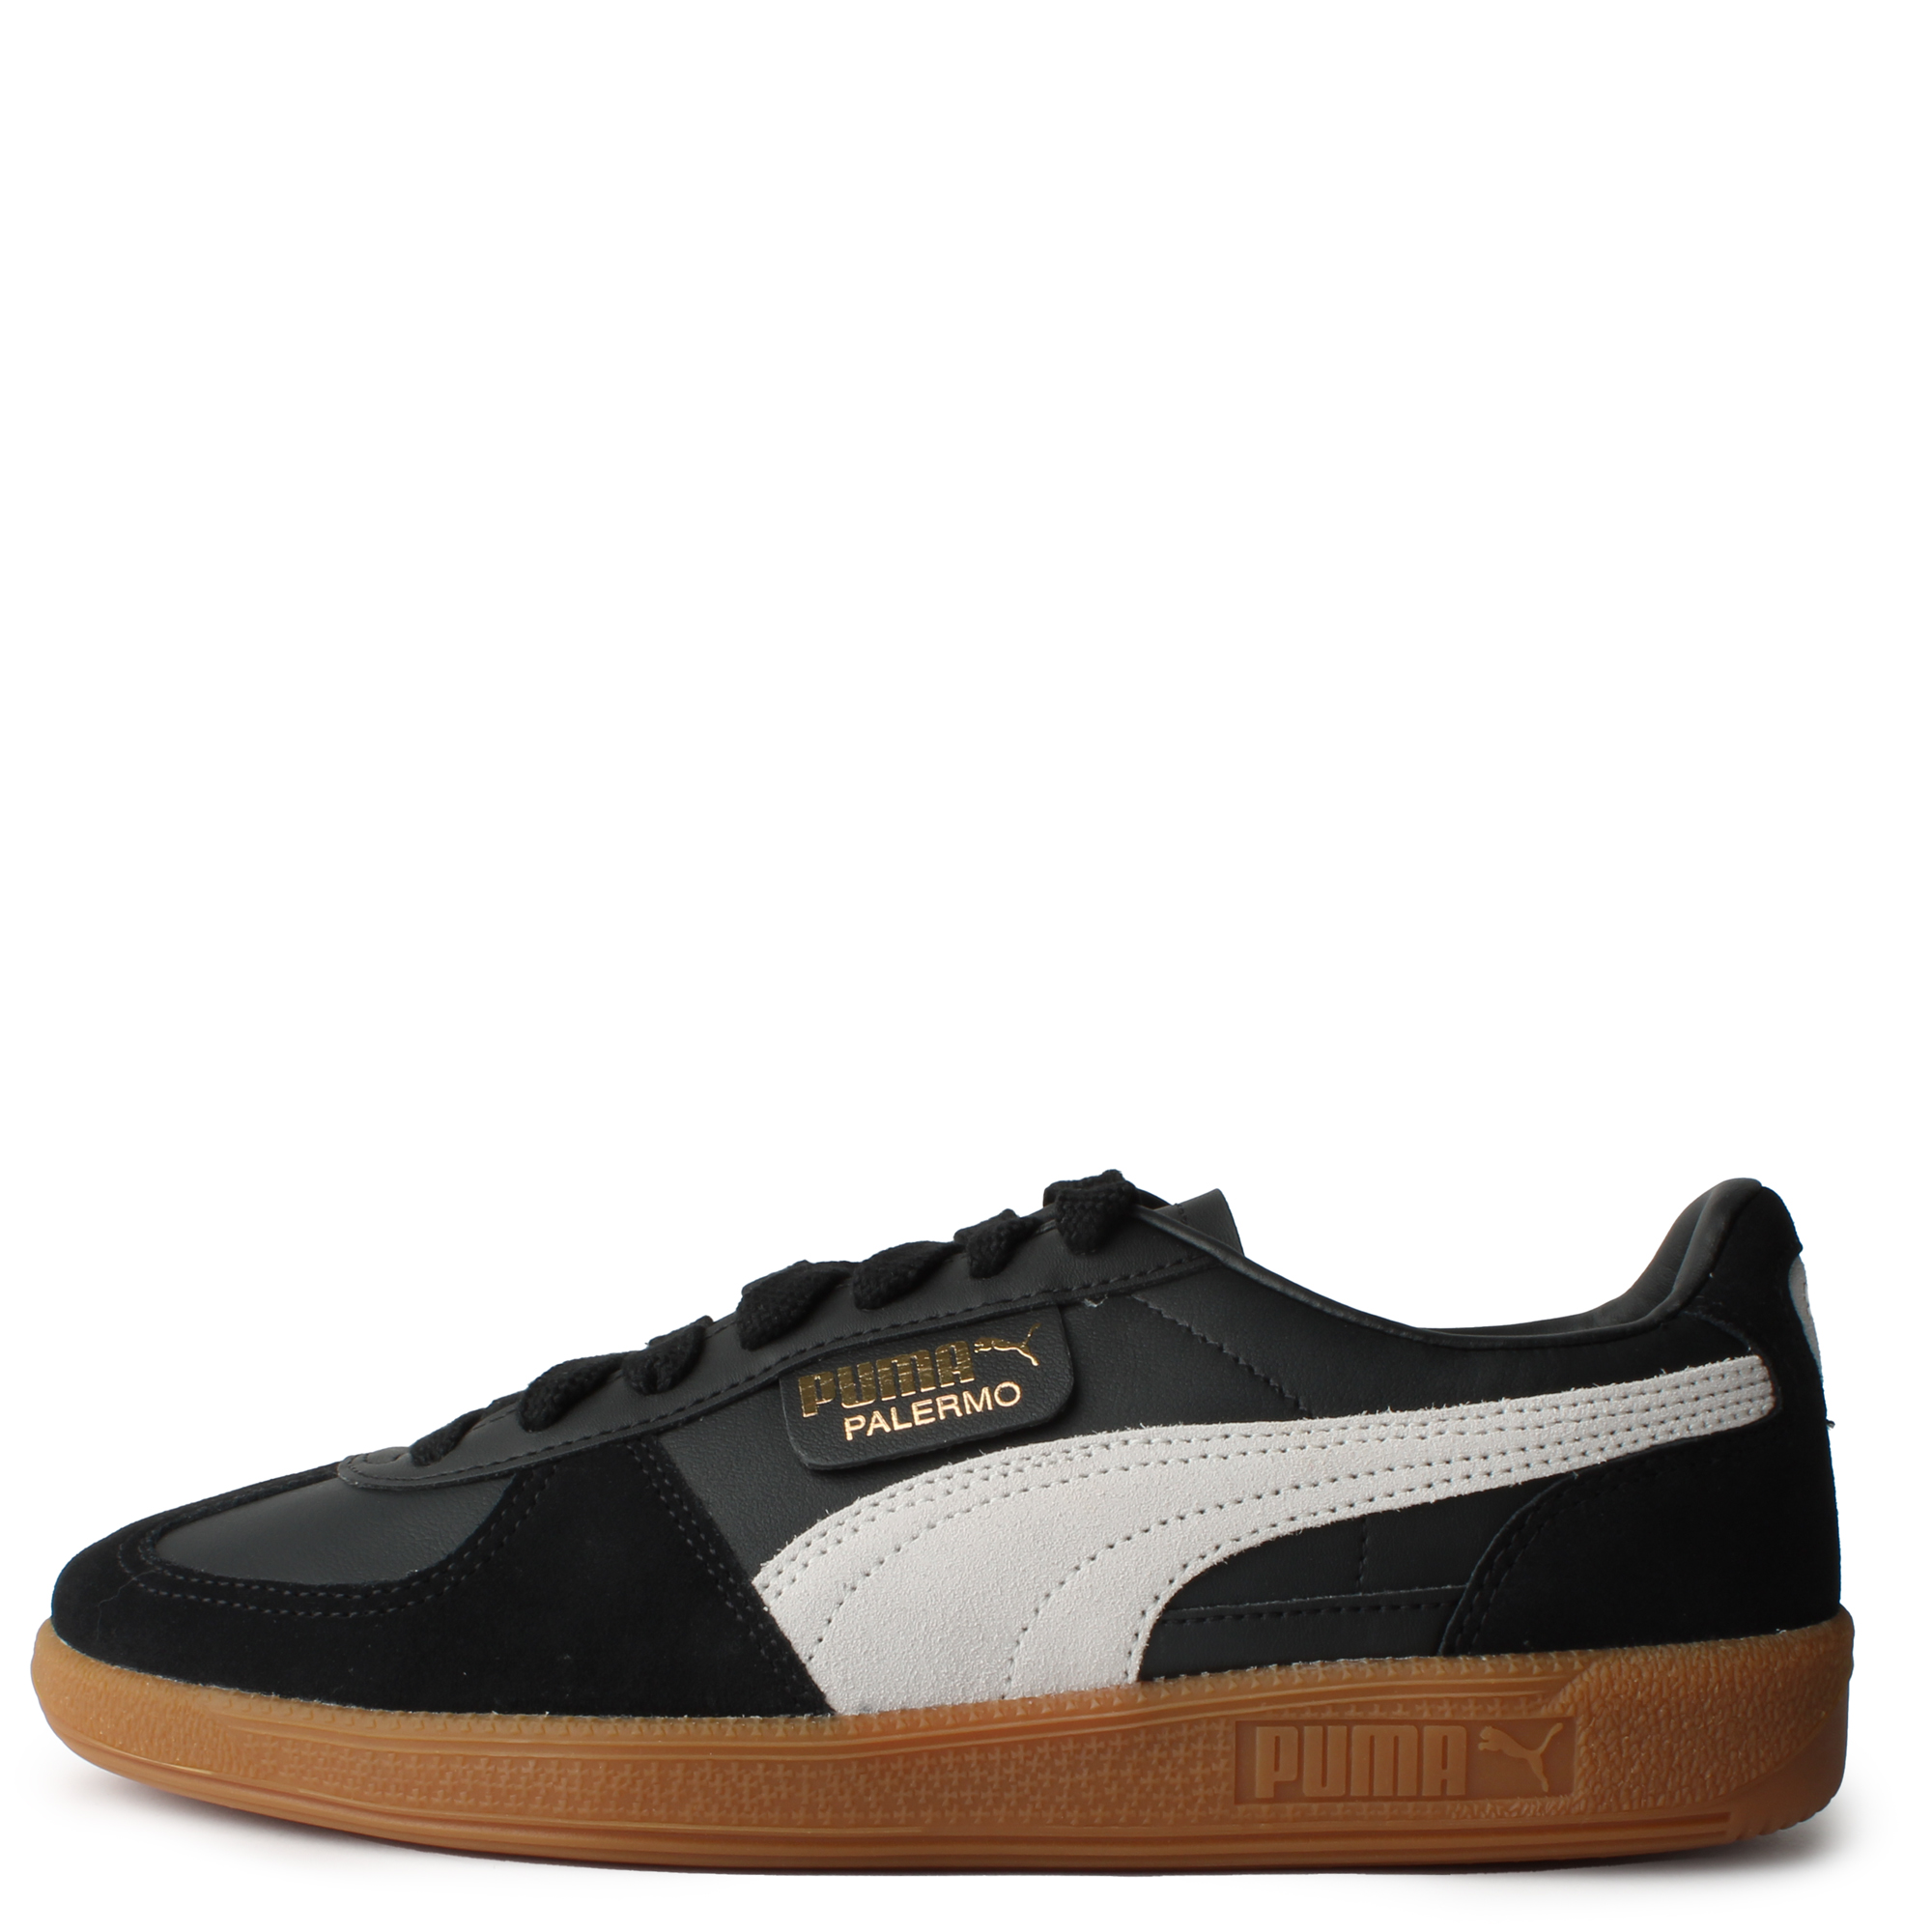 Puma Palermo  Trendy shoes, Vans old skool sneaker, Sneakers